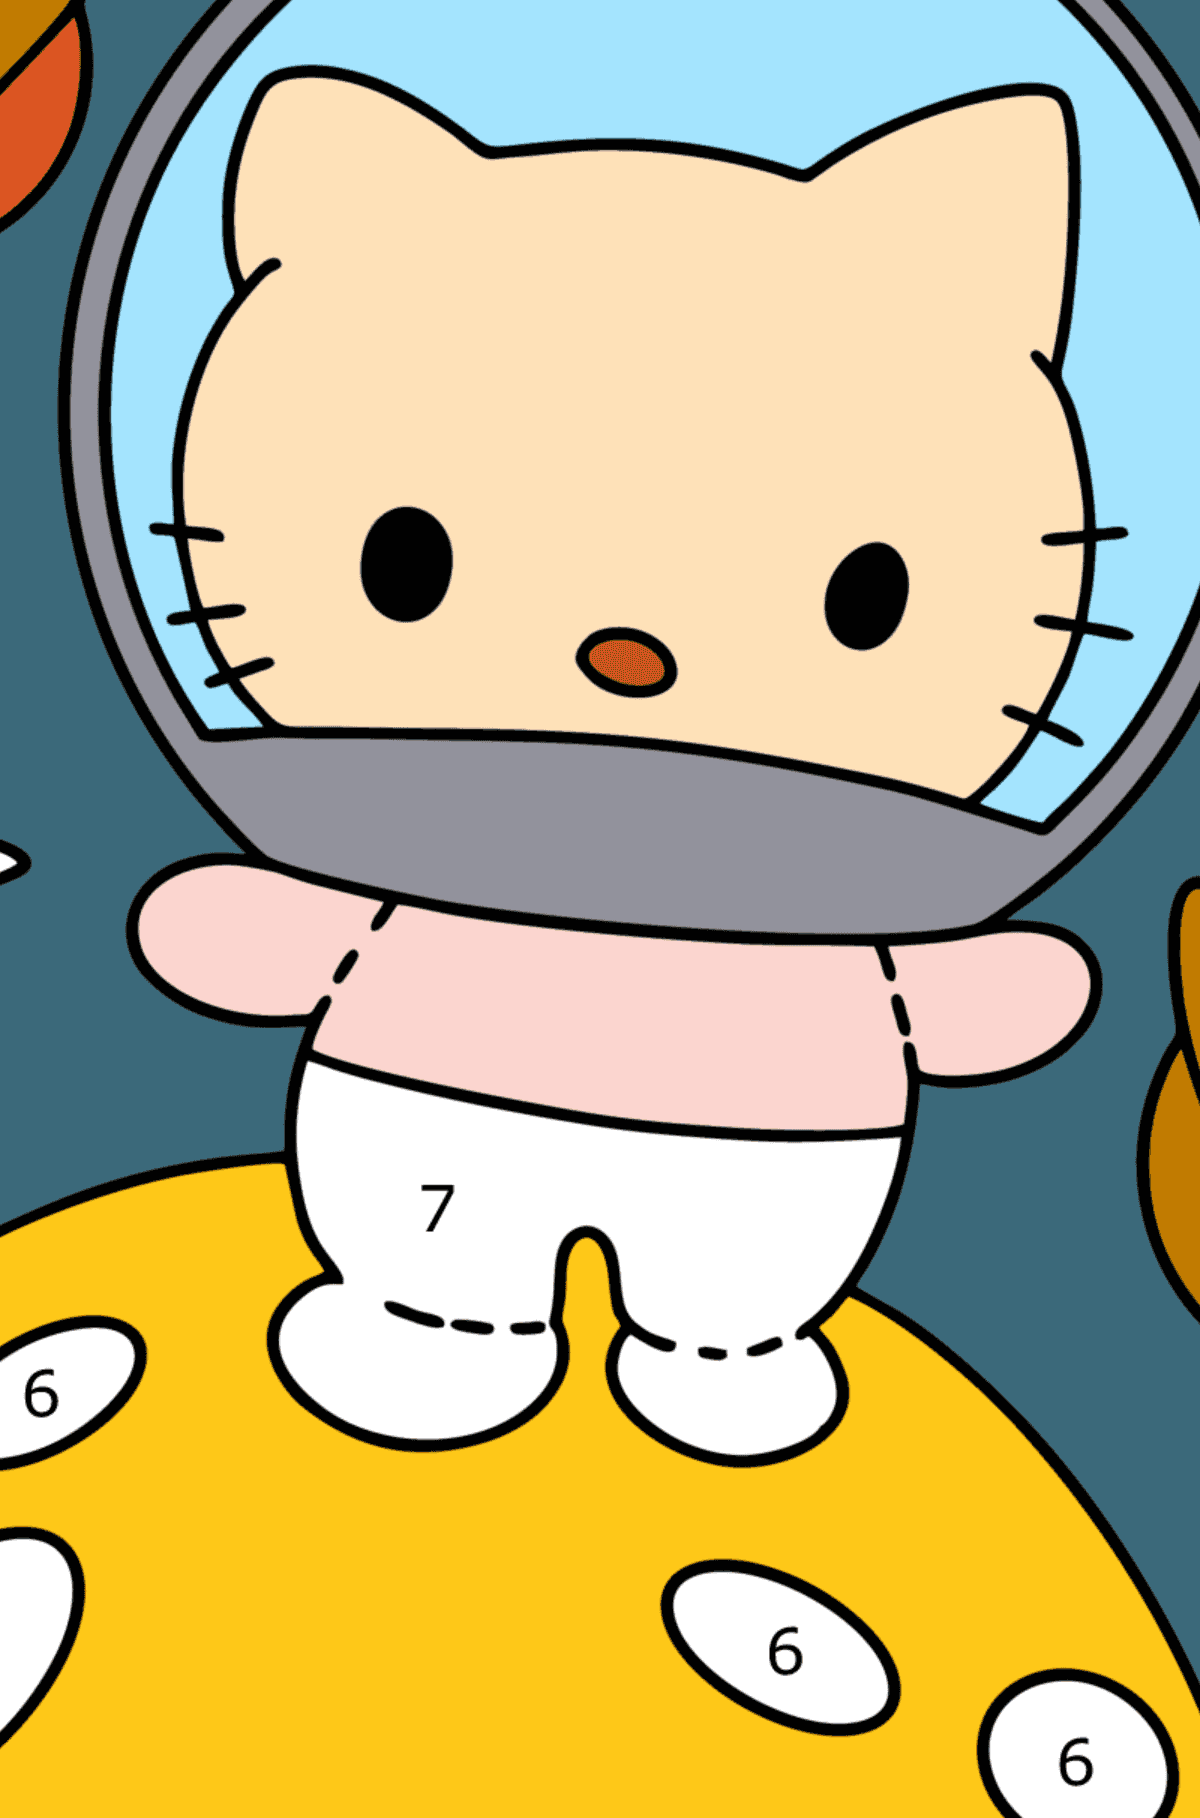 Coloriage - Astronaute Hello Kitty - Coloriage par Chiffres pour les Enfants